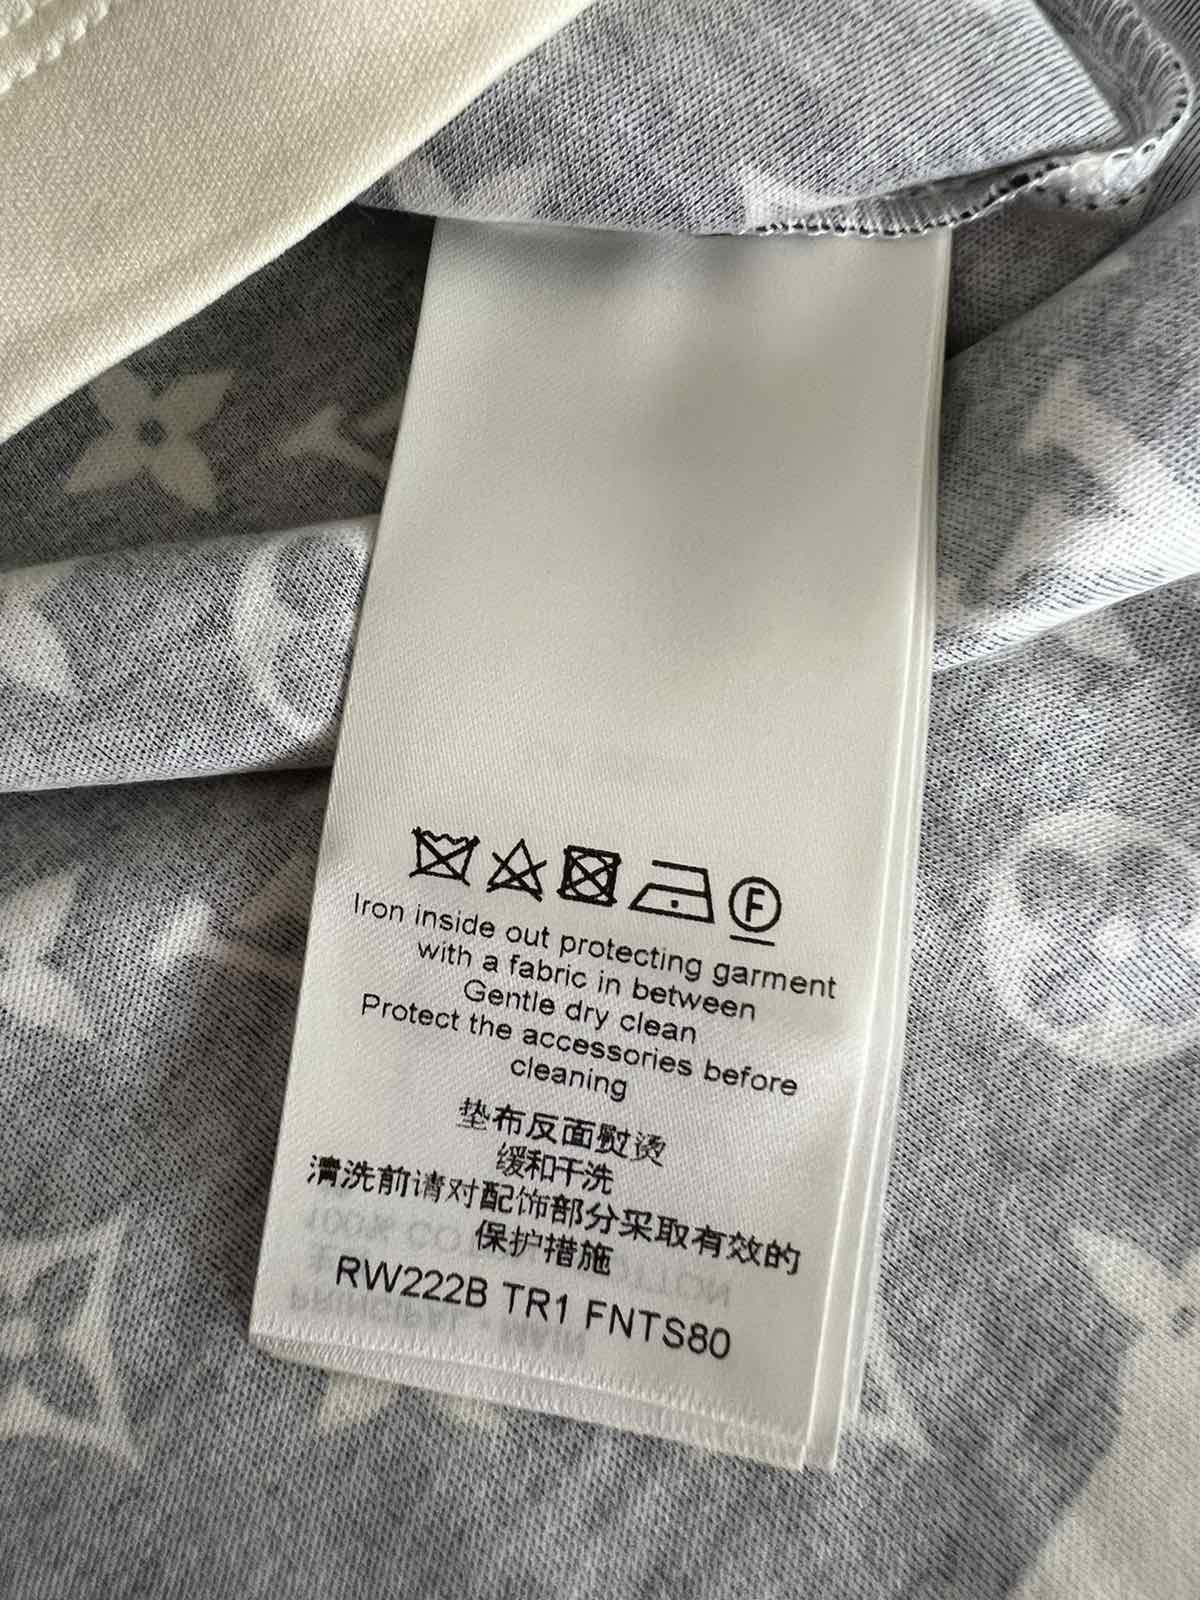 Louis Vuitton Stripe Accent Monogram T-Shirt. Size S